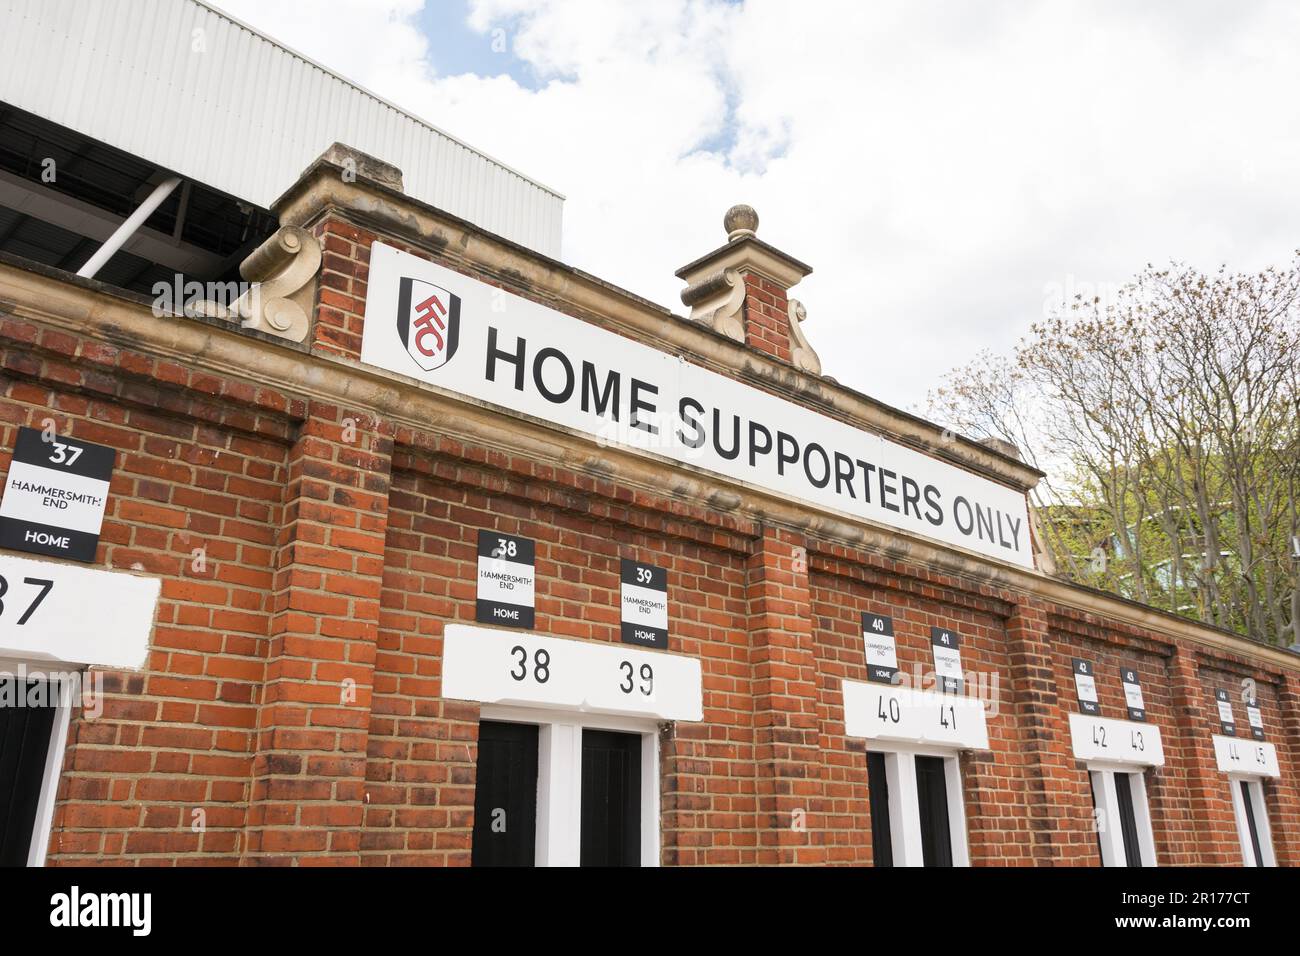 Home Supporters turnstiles à Craven Cottage - la maison de Fulham football Club, Fulham, Stevenage Road, Londres, SW6, Angleterre, Royaume-Uni Banque D'Images